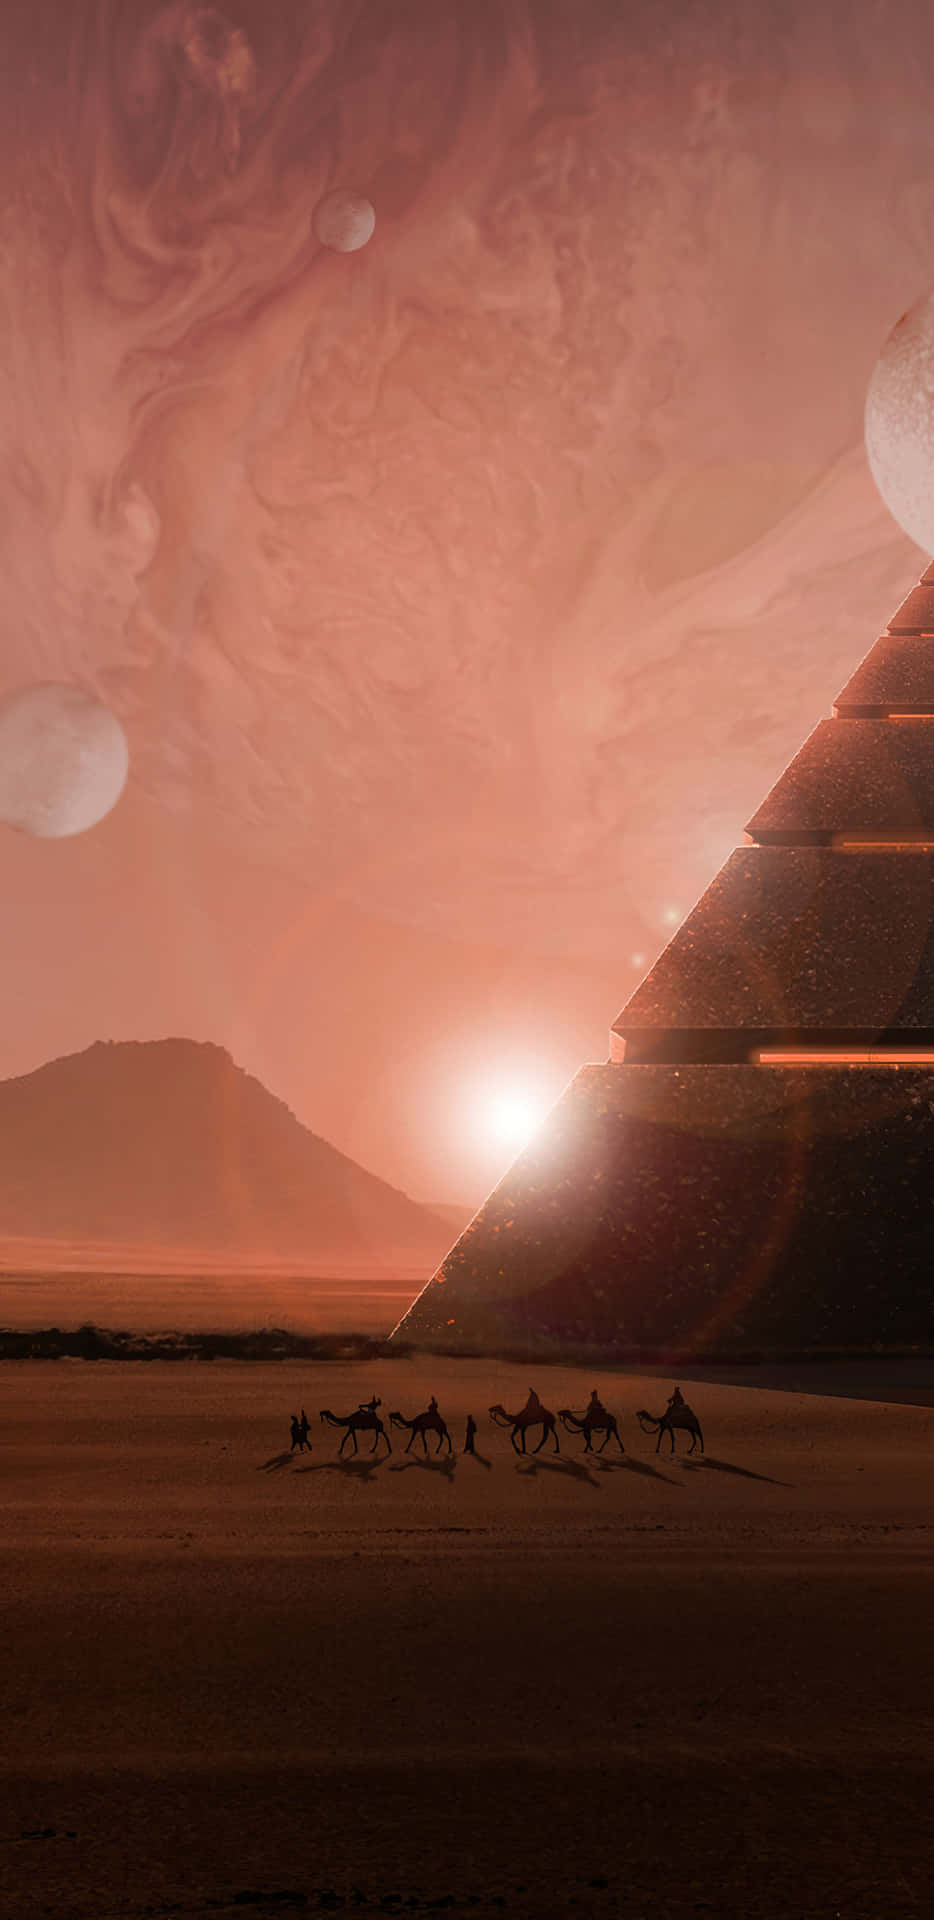 Scifi Pyramid Of The Moon: Vetenskapsfiktion Pyramid På Månen. Wallpaper